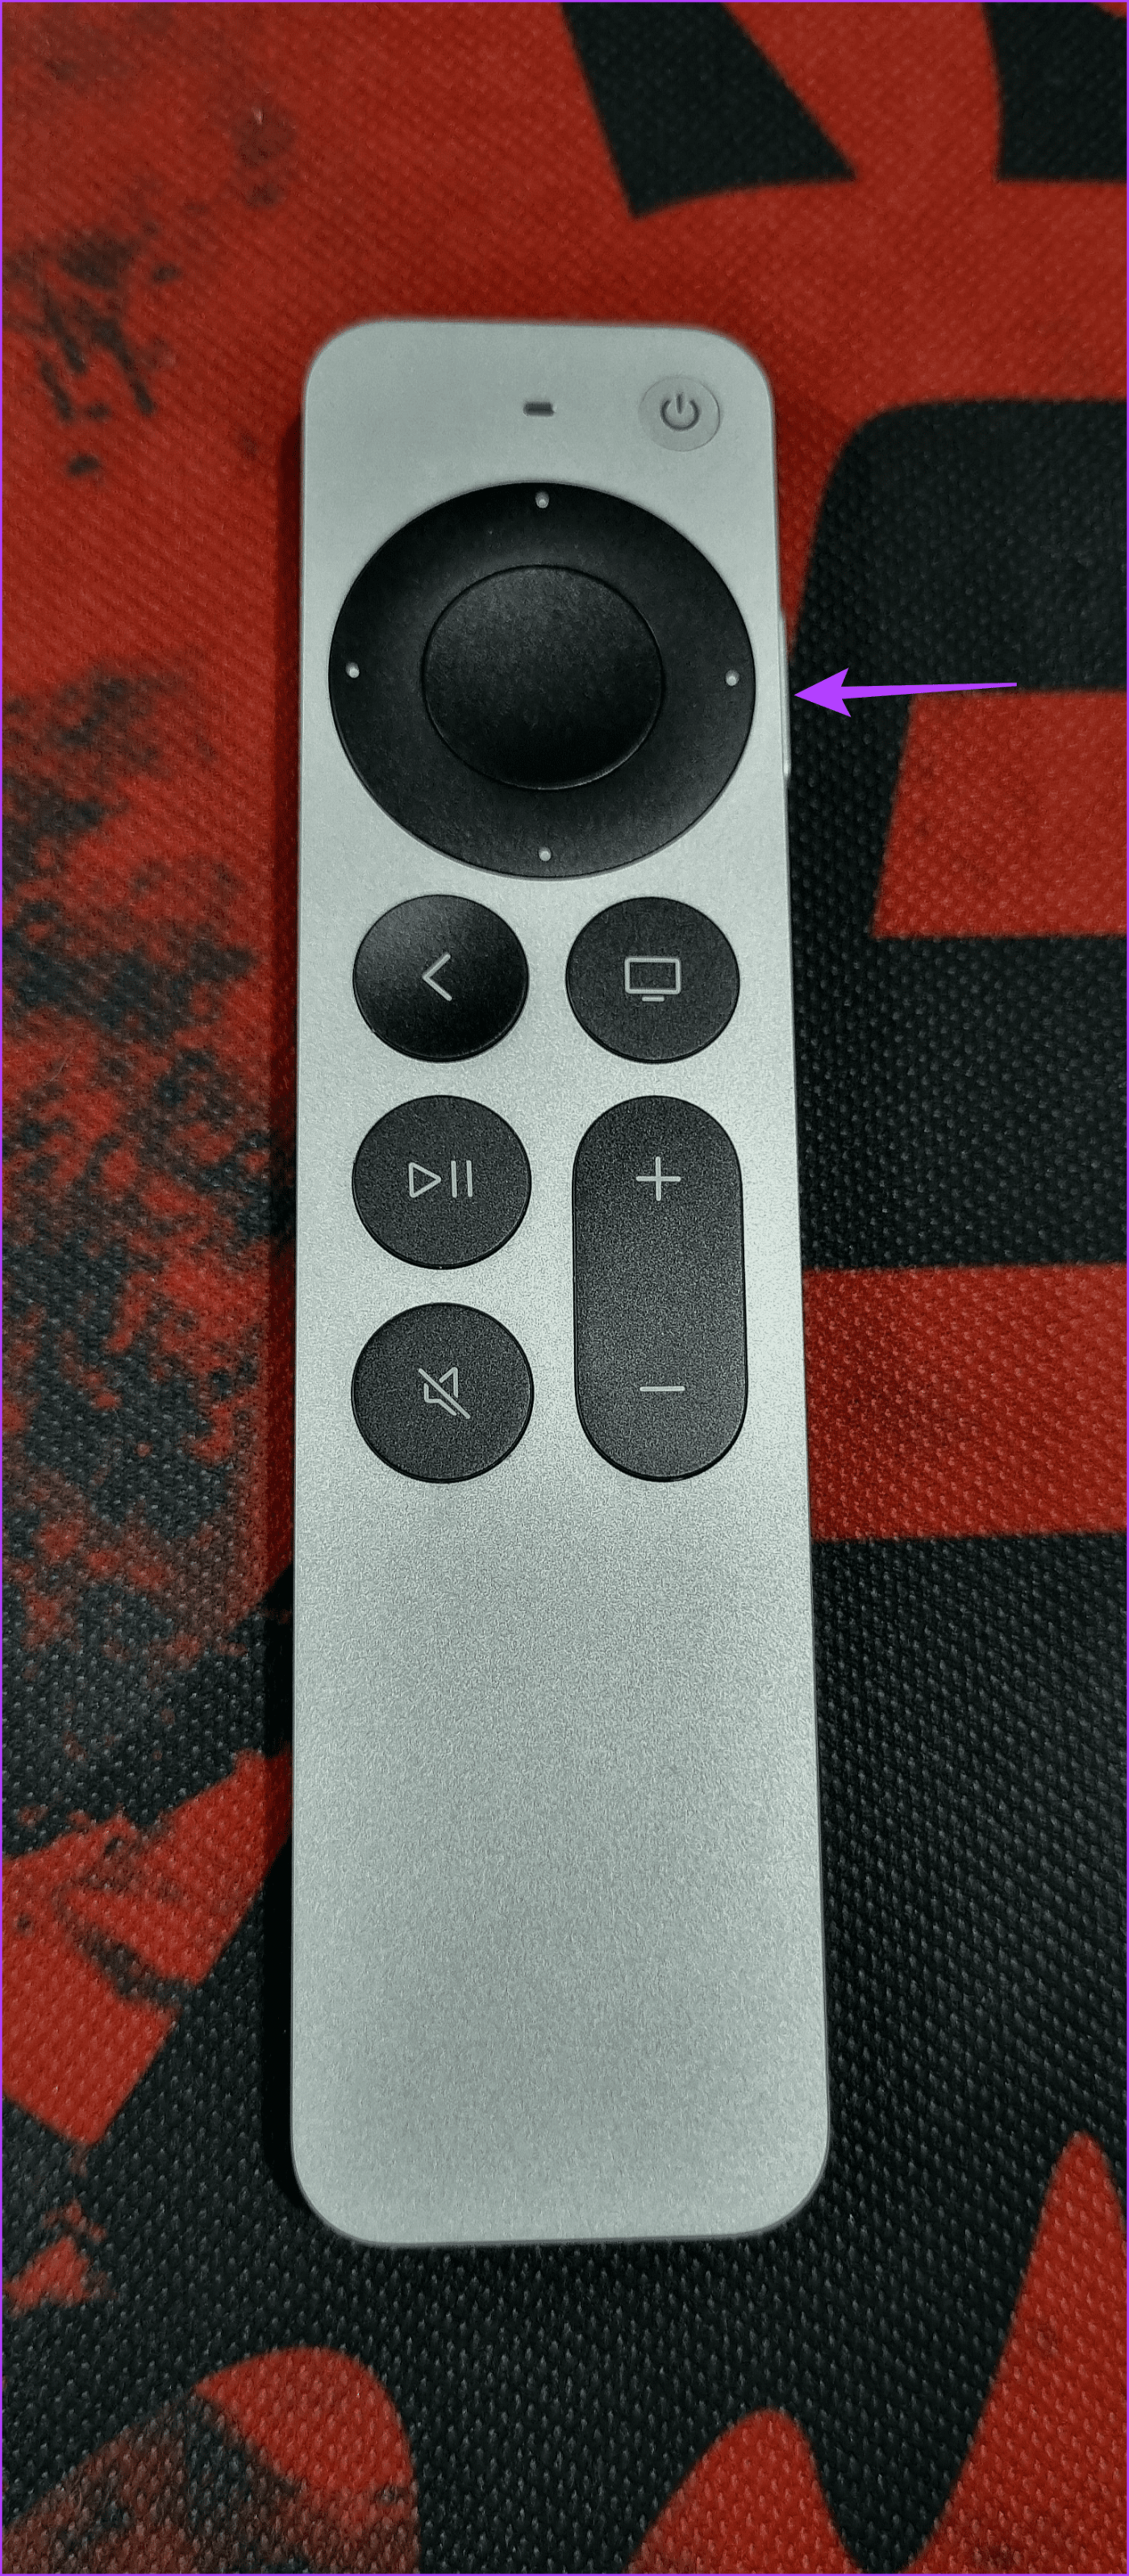 Cómo apagar el Apple TV con o sin control remoto